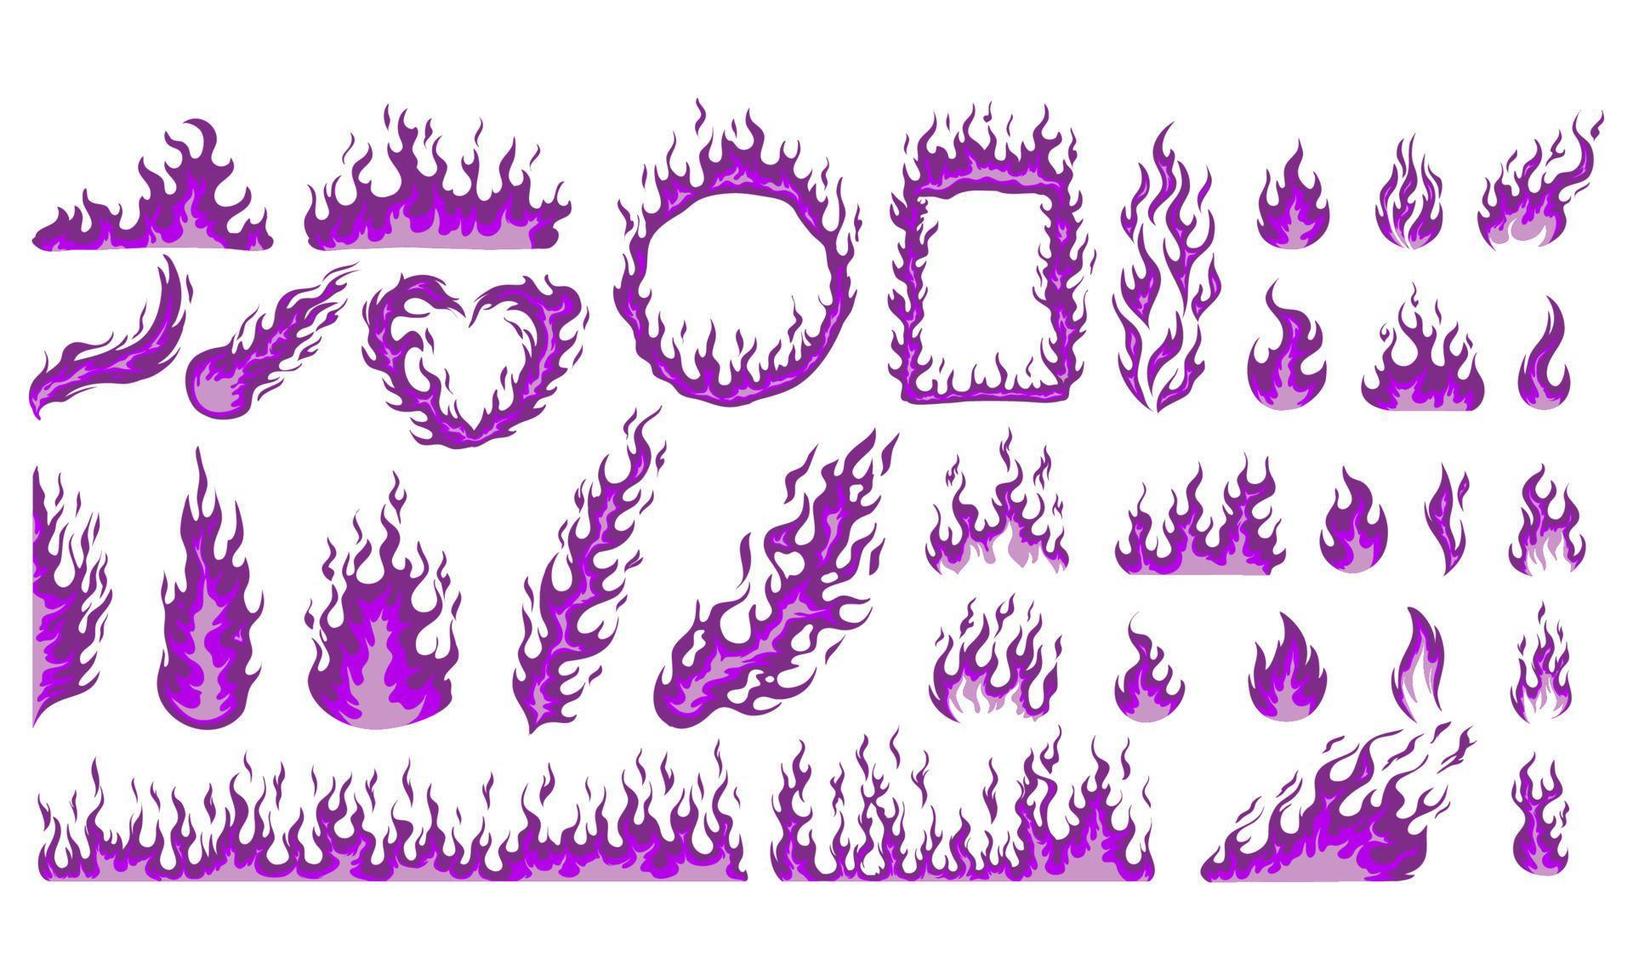 elemento de llamas de dibujos animados púrpura. apto para cómic, ilustración, fondo. vector